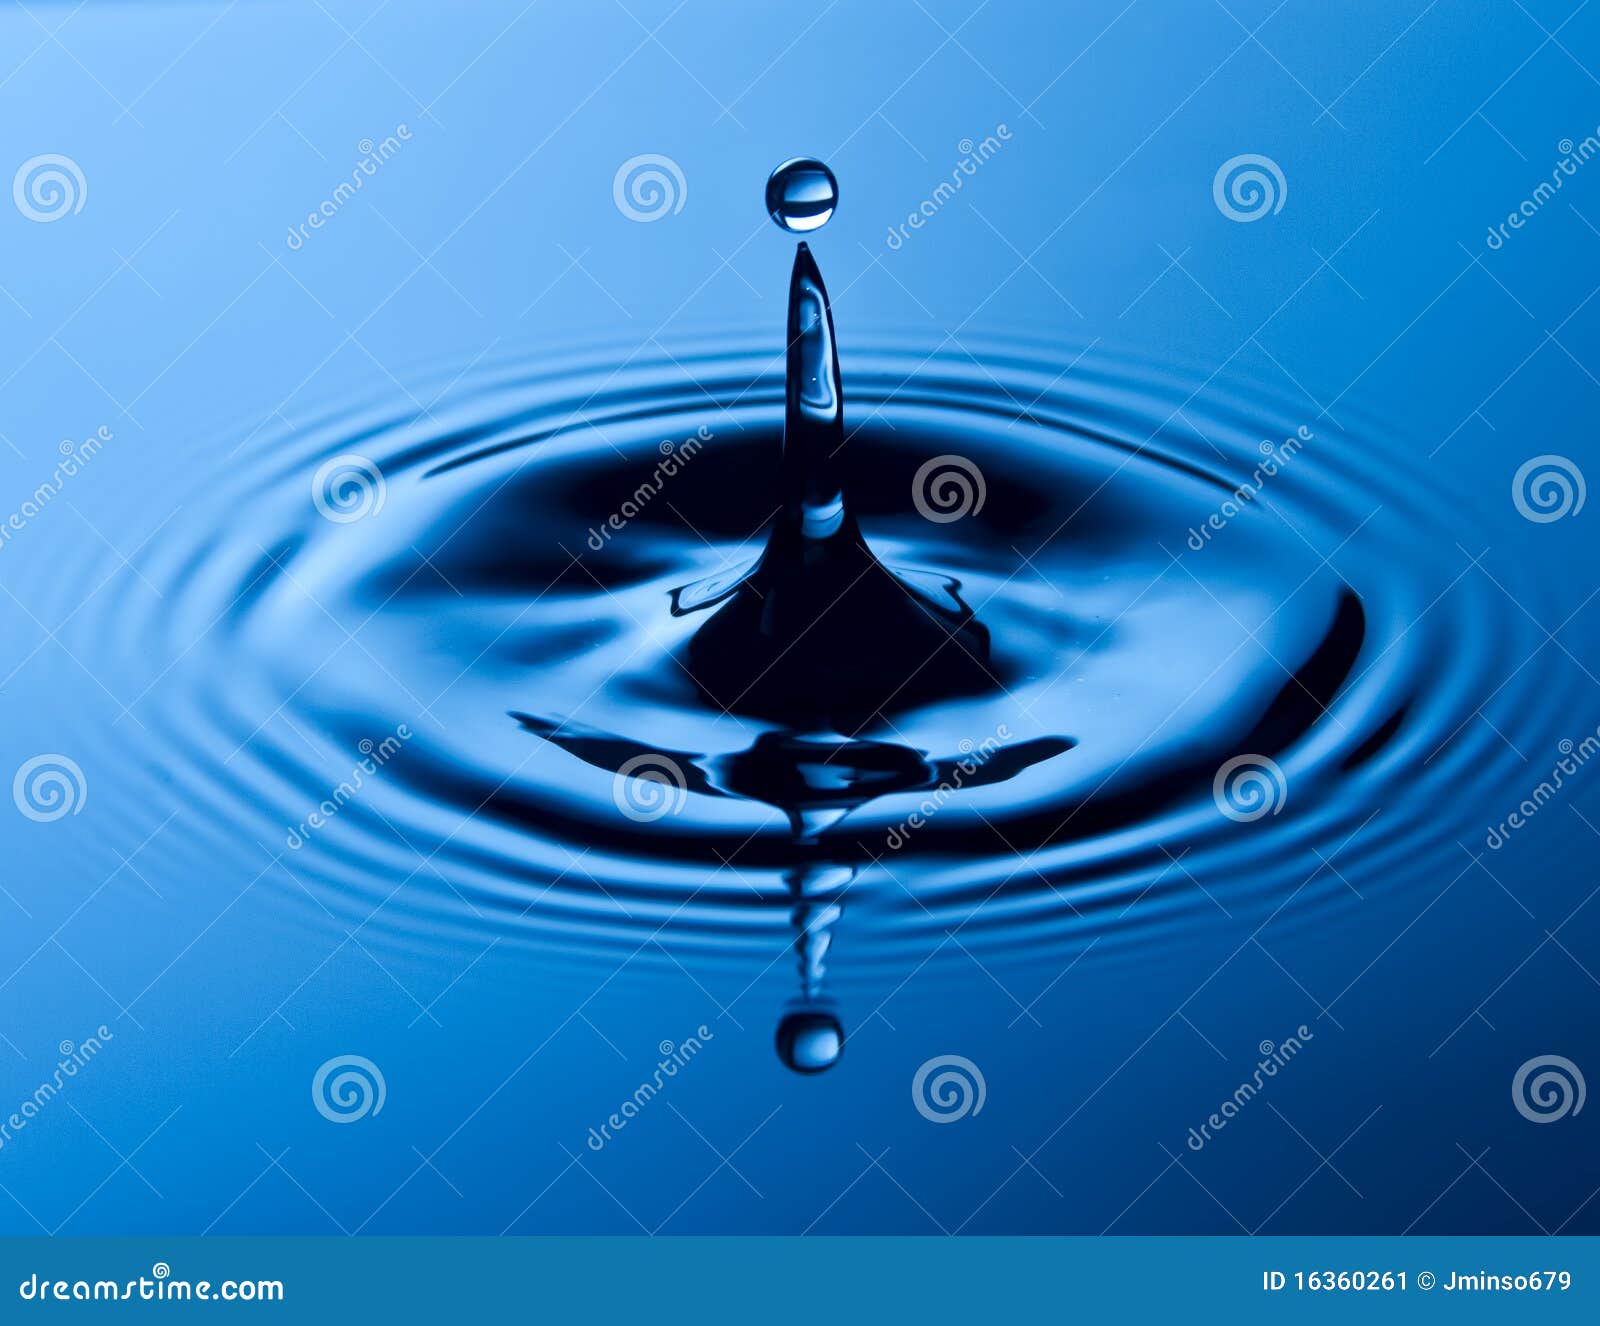 simple water drop